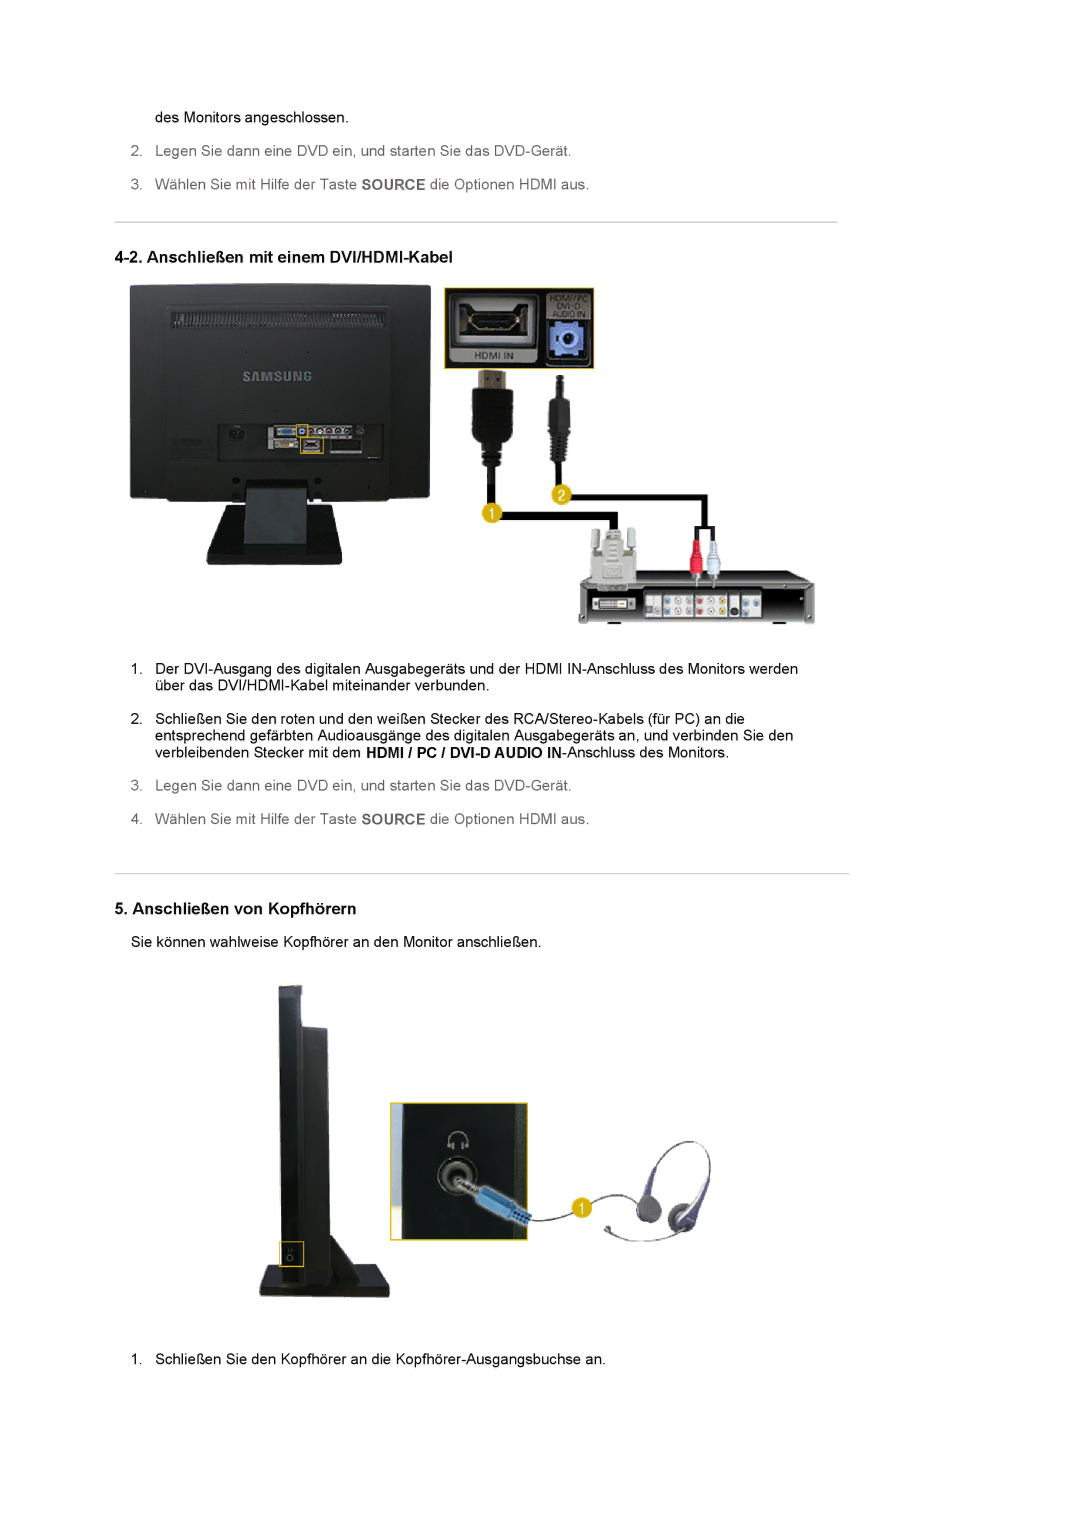 Samsung LS22CRASB/EDC manual Anschließen mit einem DVI/HDMI-Kabel, Anschließen von Kopfhörern 